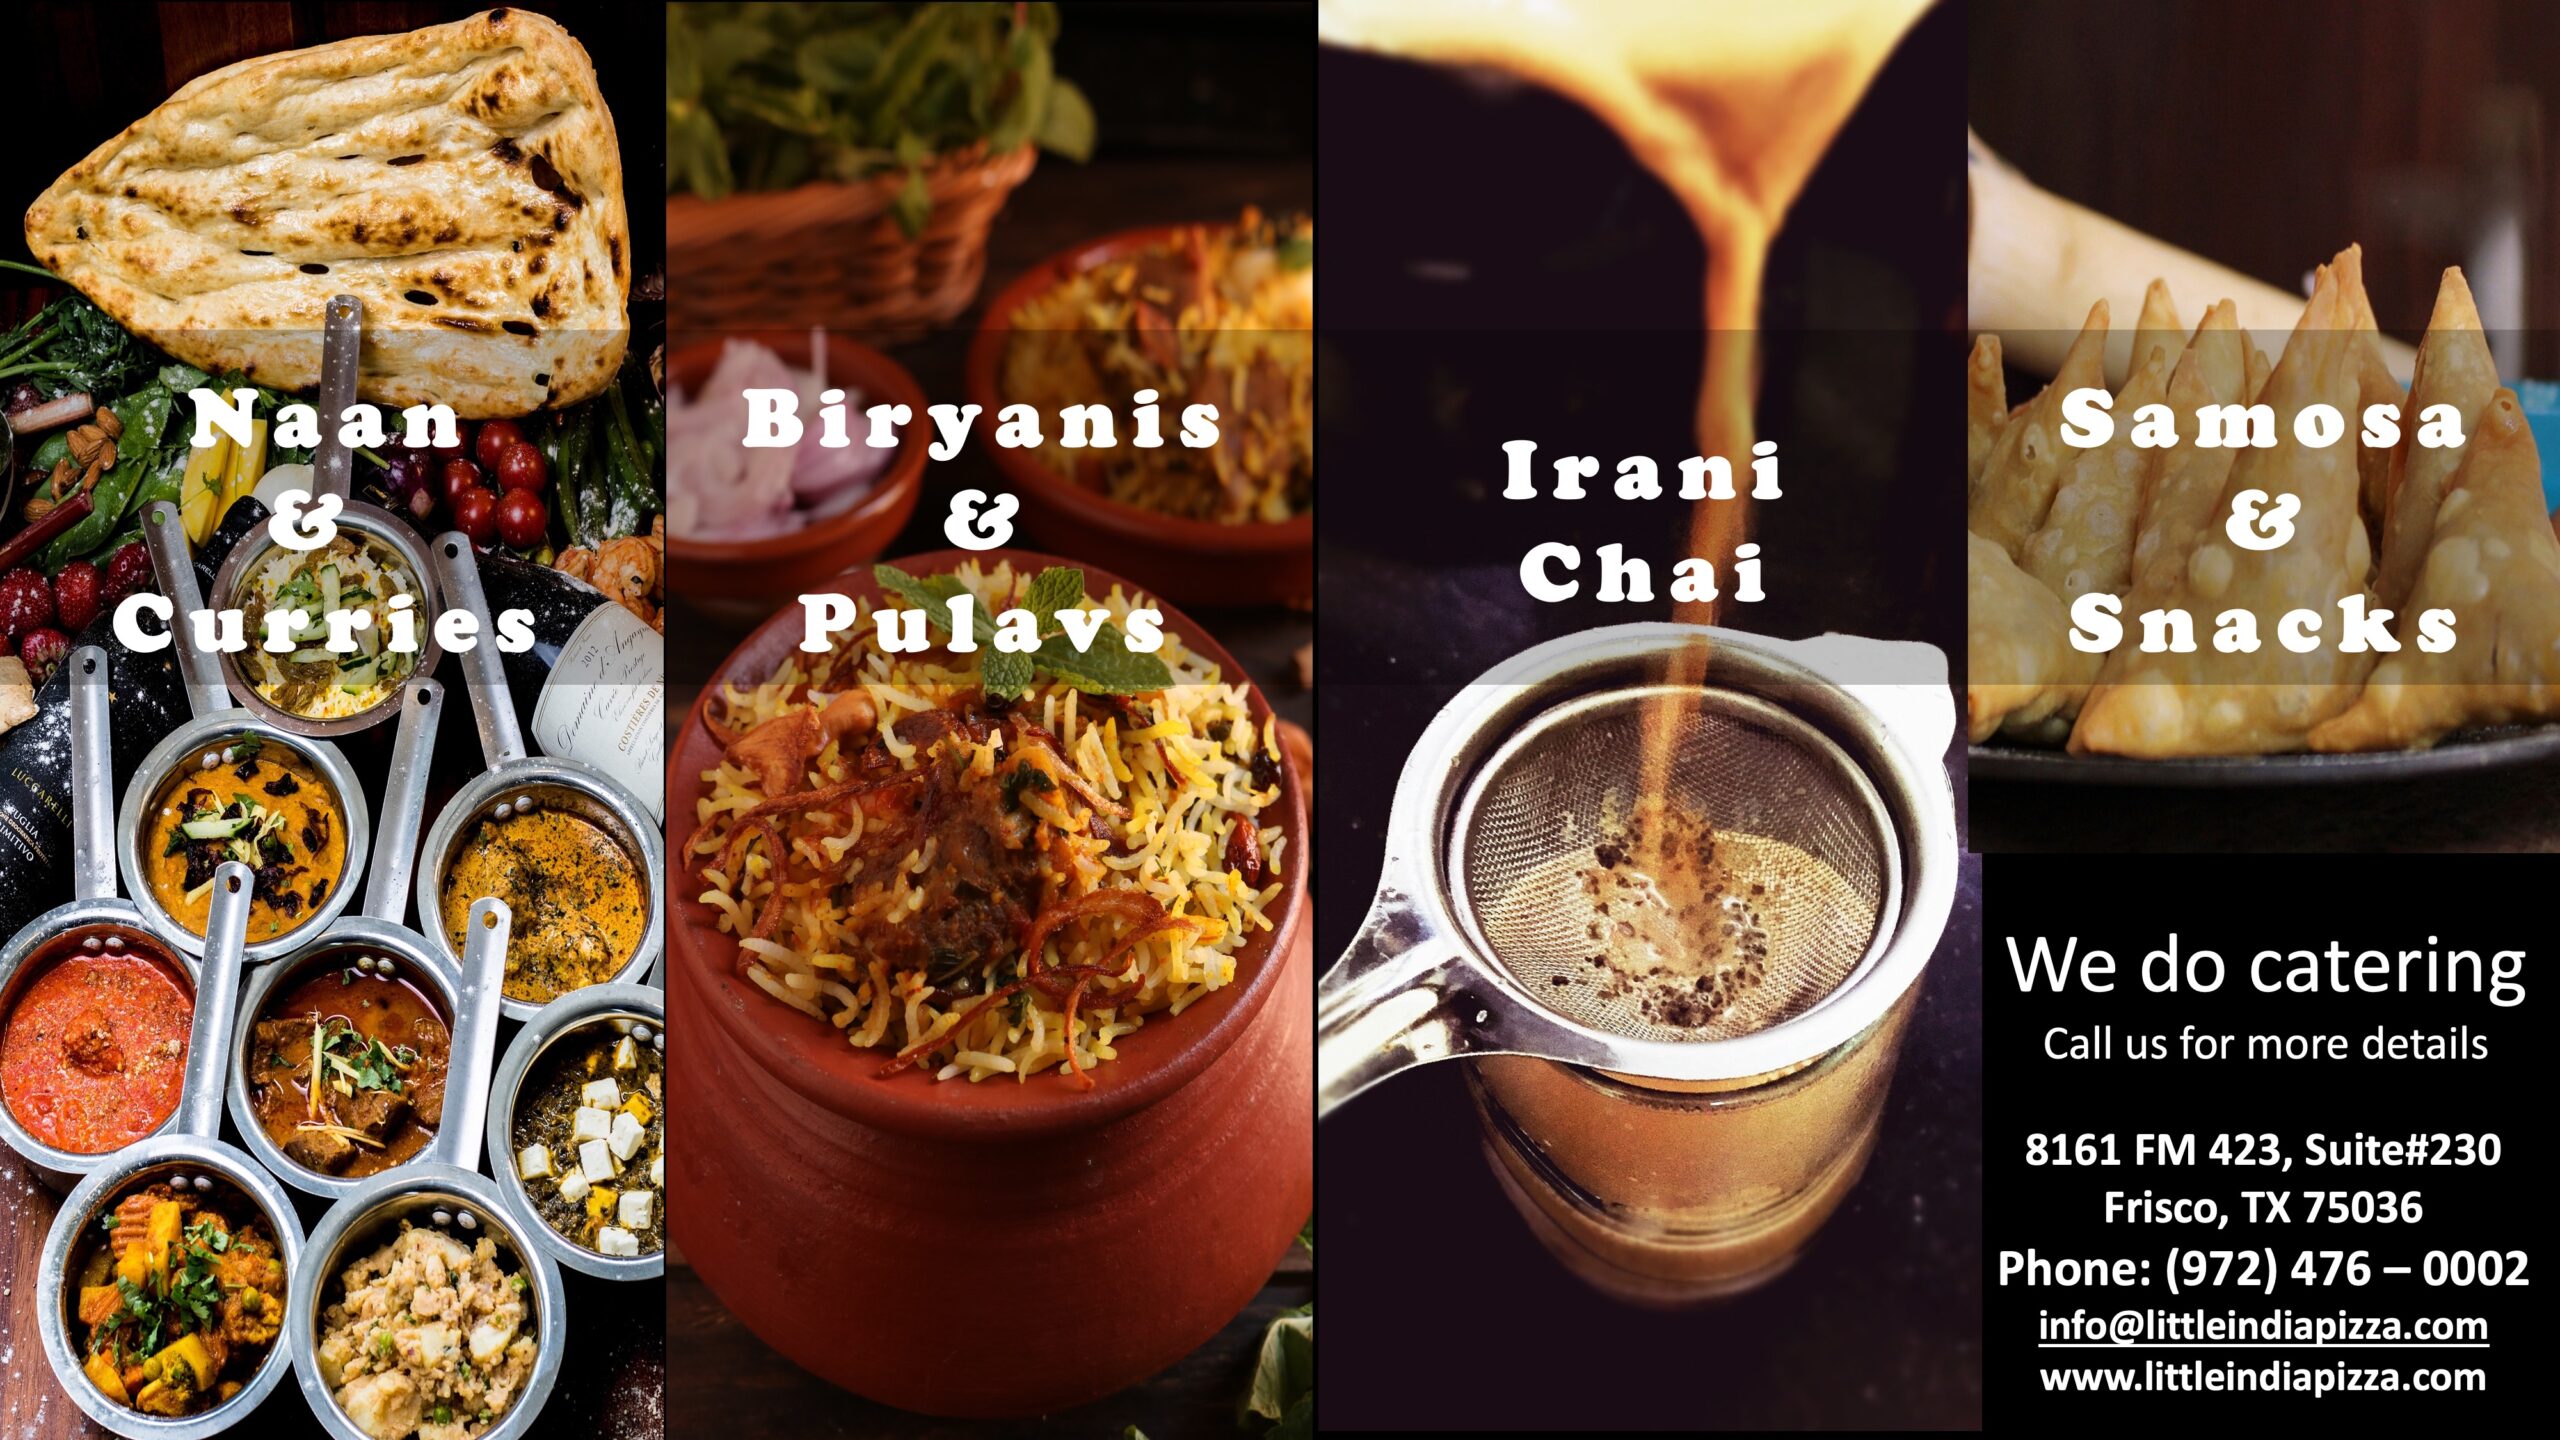 Biryanis, pulavs, curries, irani chai, samosa